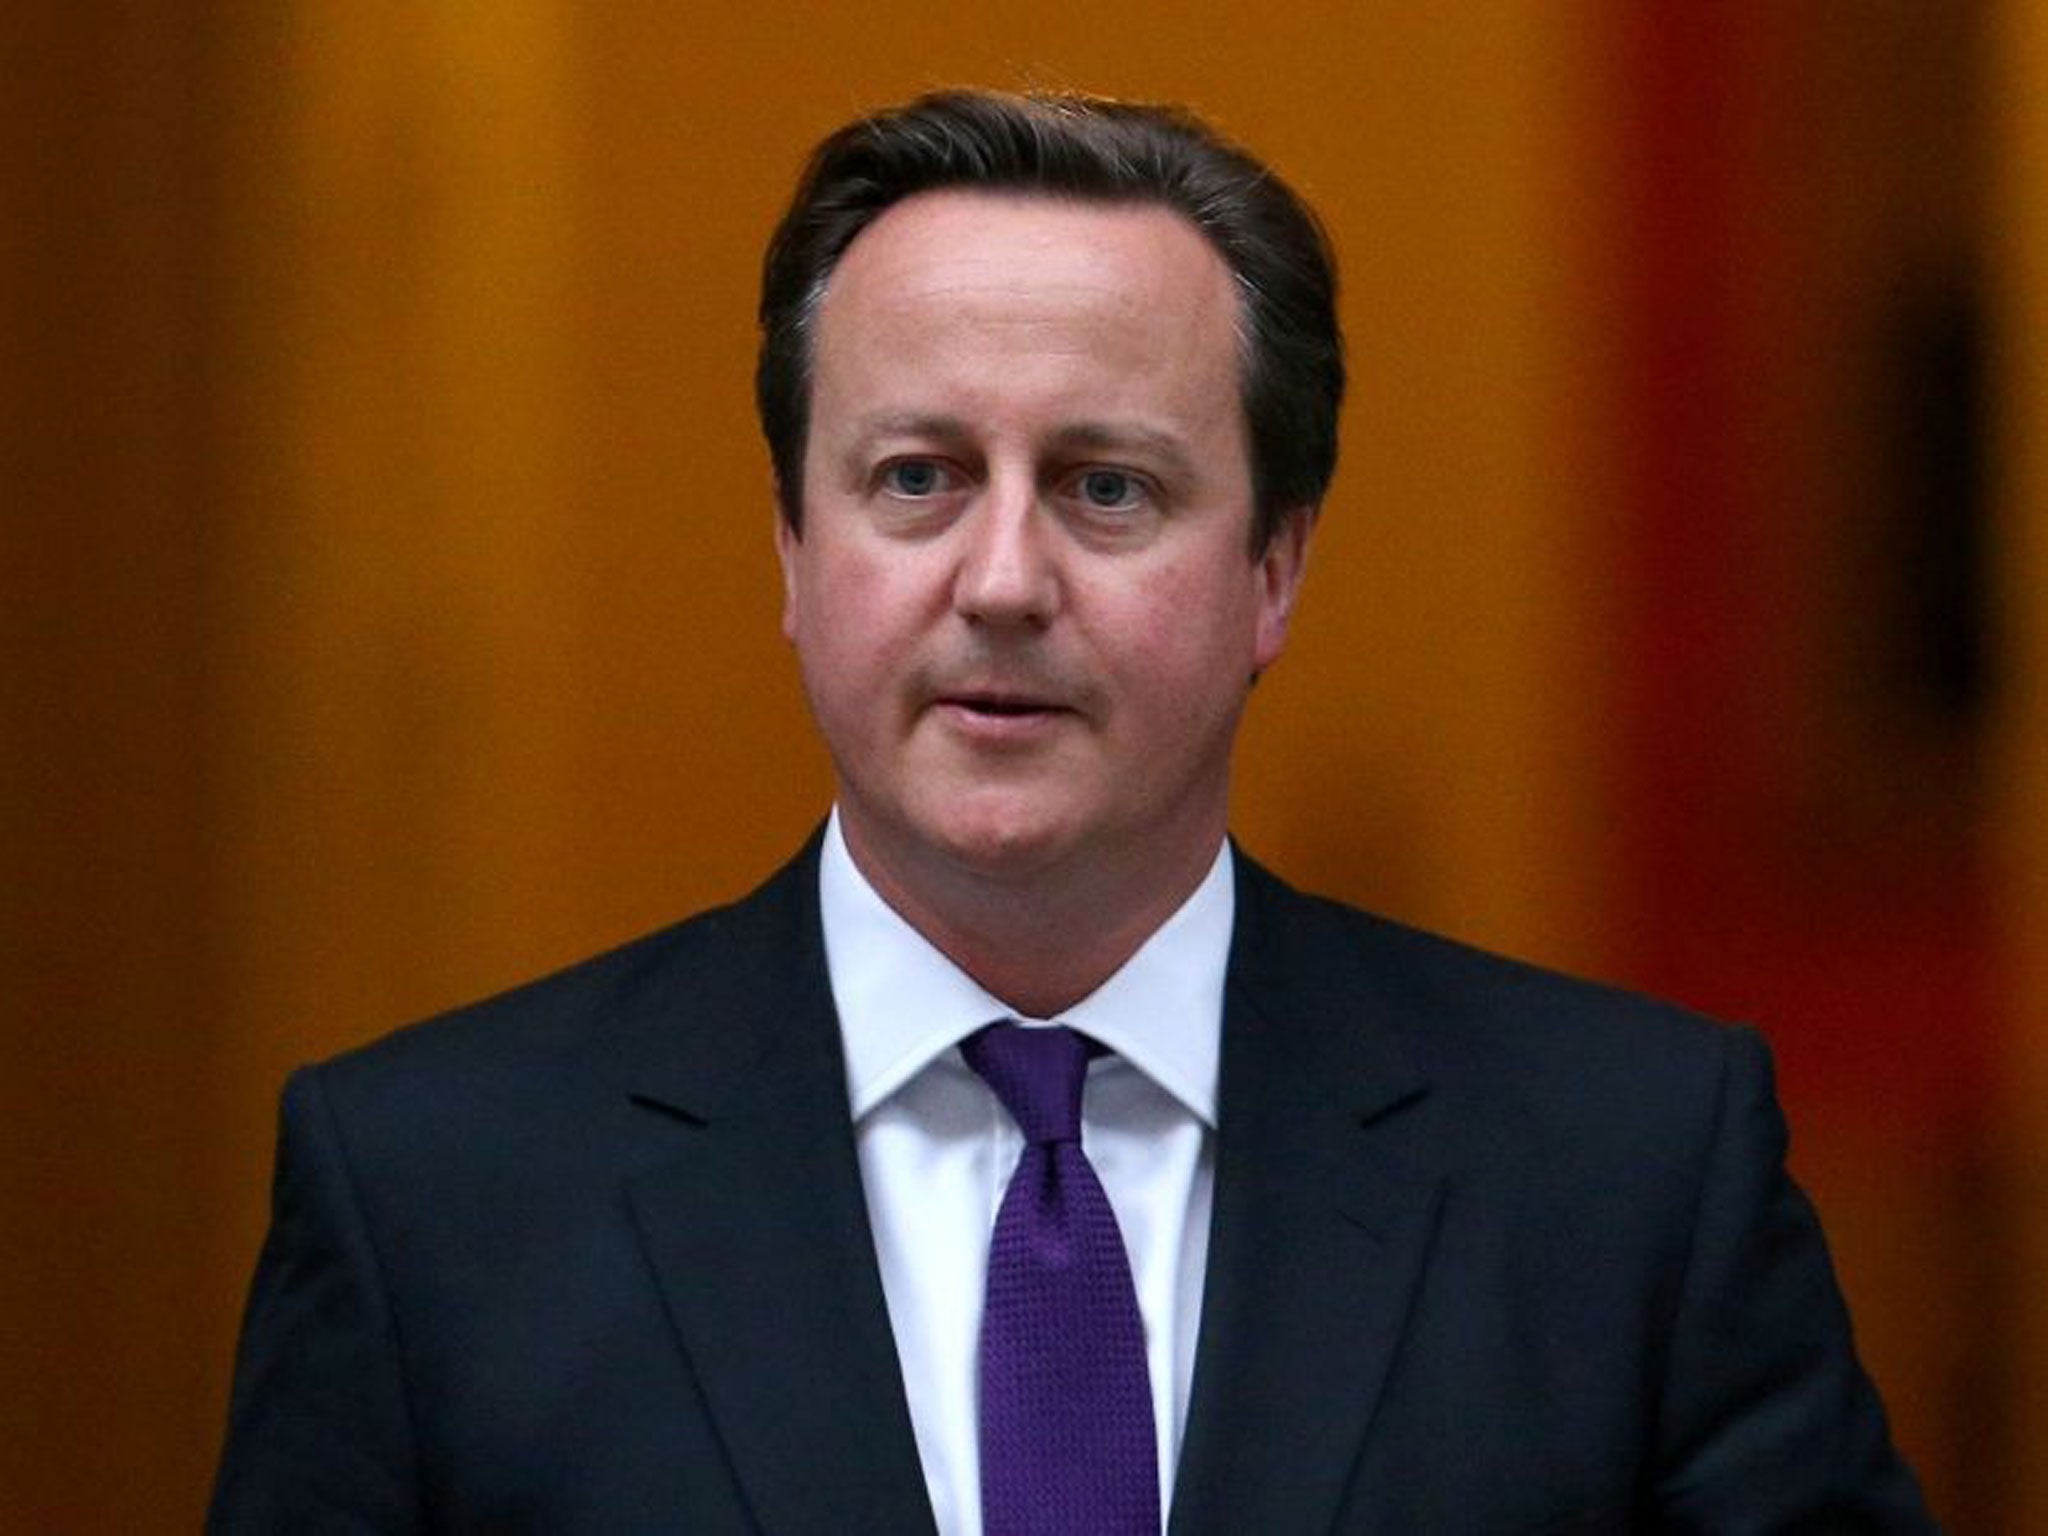 David Cameron: UN Security Council meeting at British behest